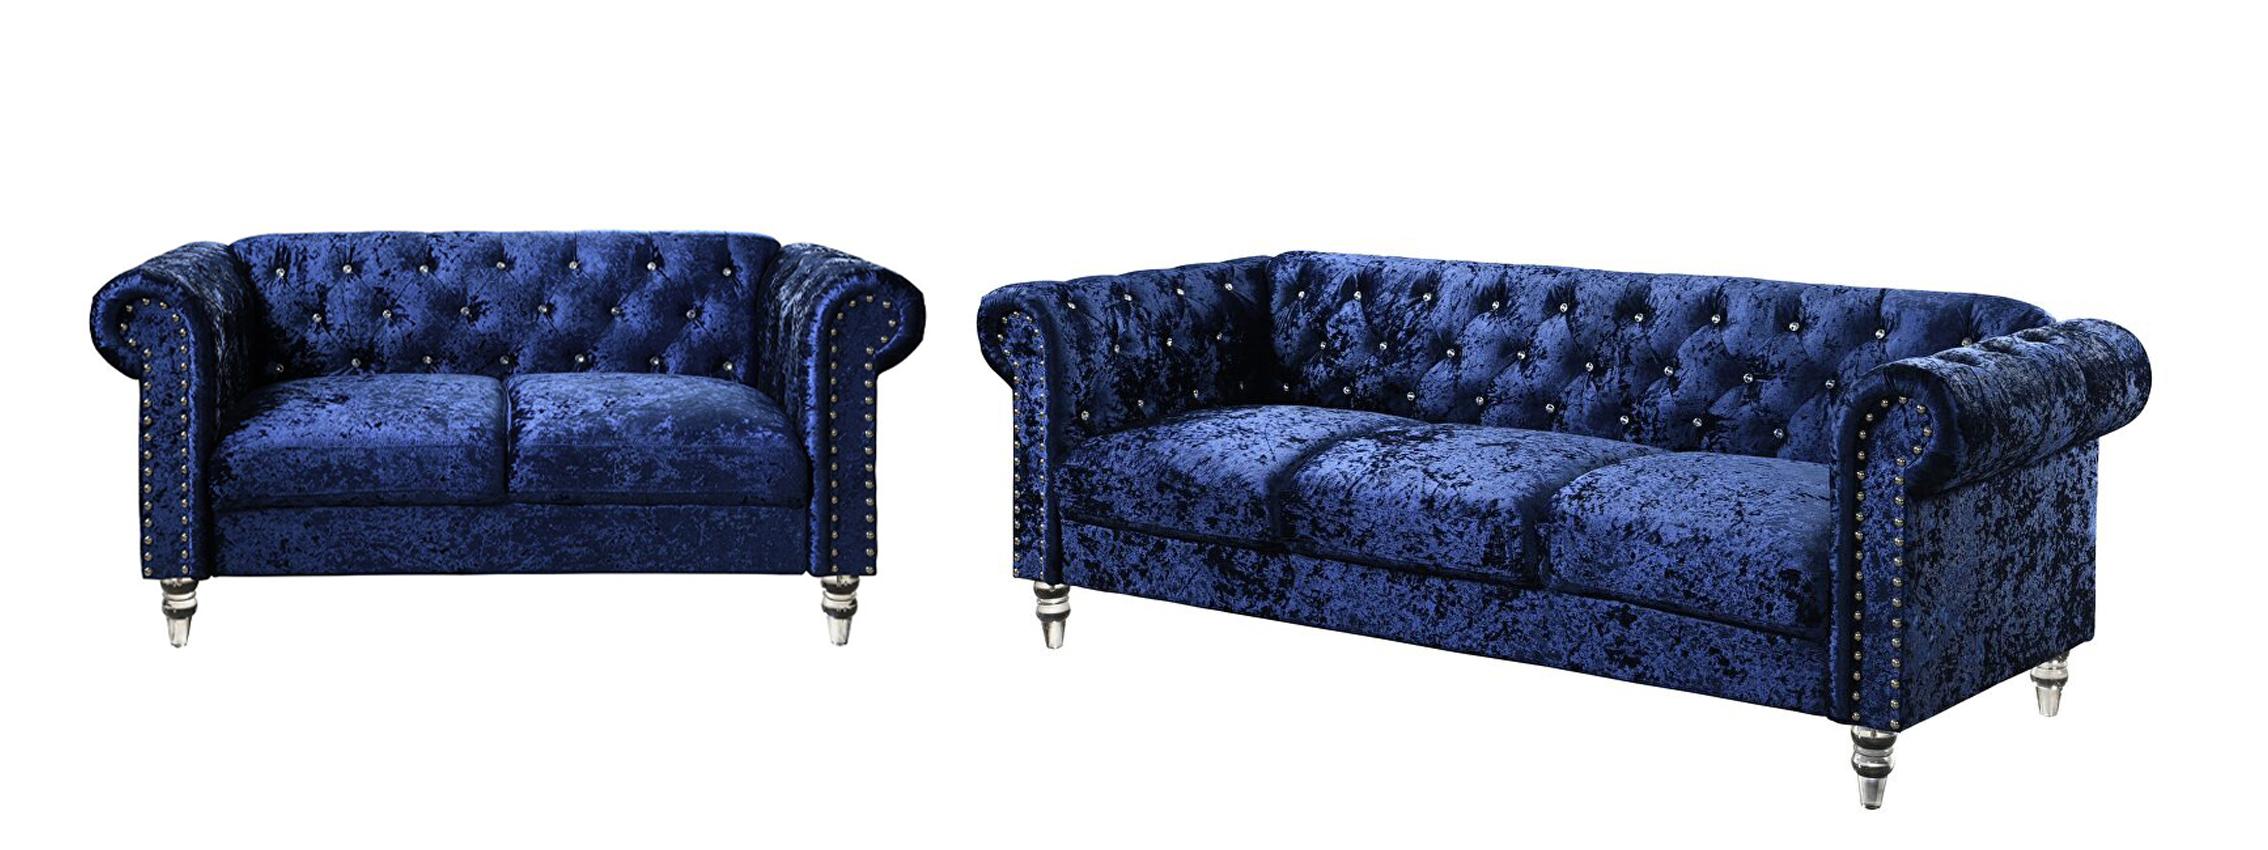 Transitional Sofa and Loveseat Set U9550 U9550-BLUE VELVET-S/LS in Blue Velvet